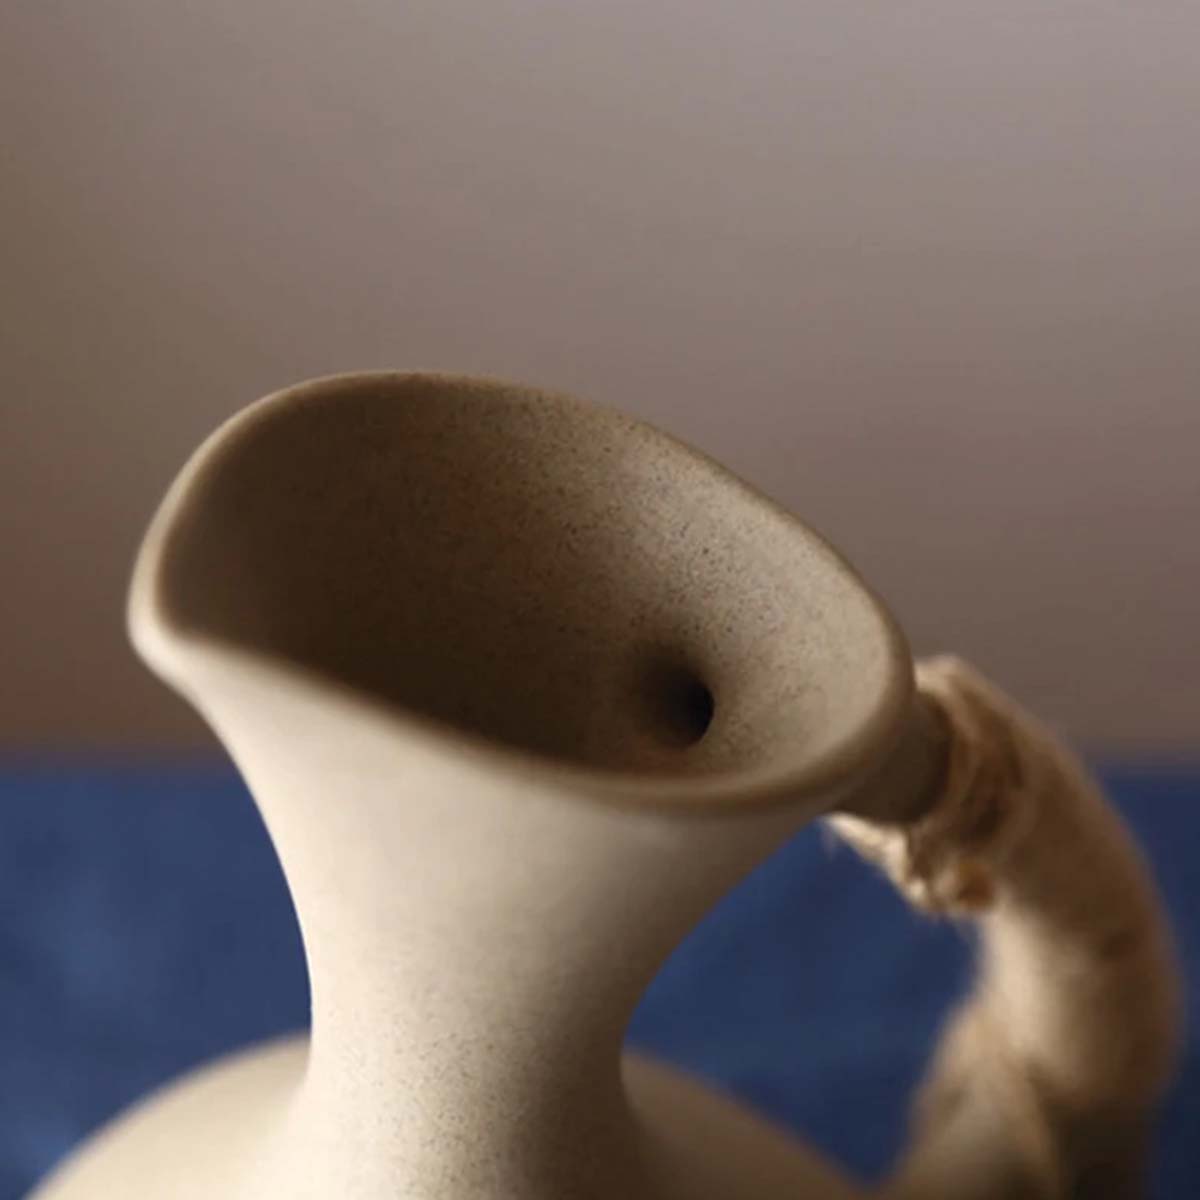 Keramik Krug und Becher